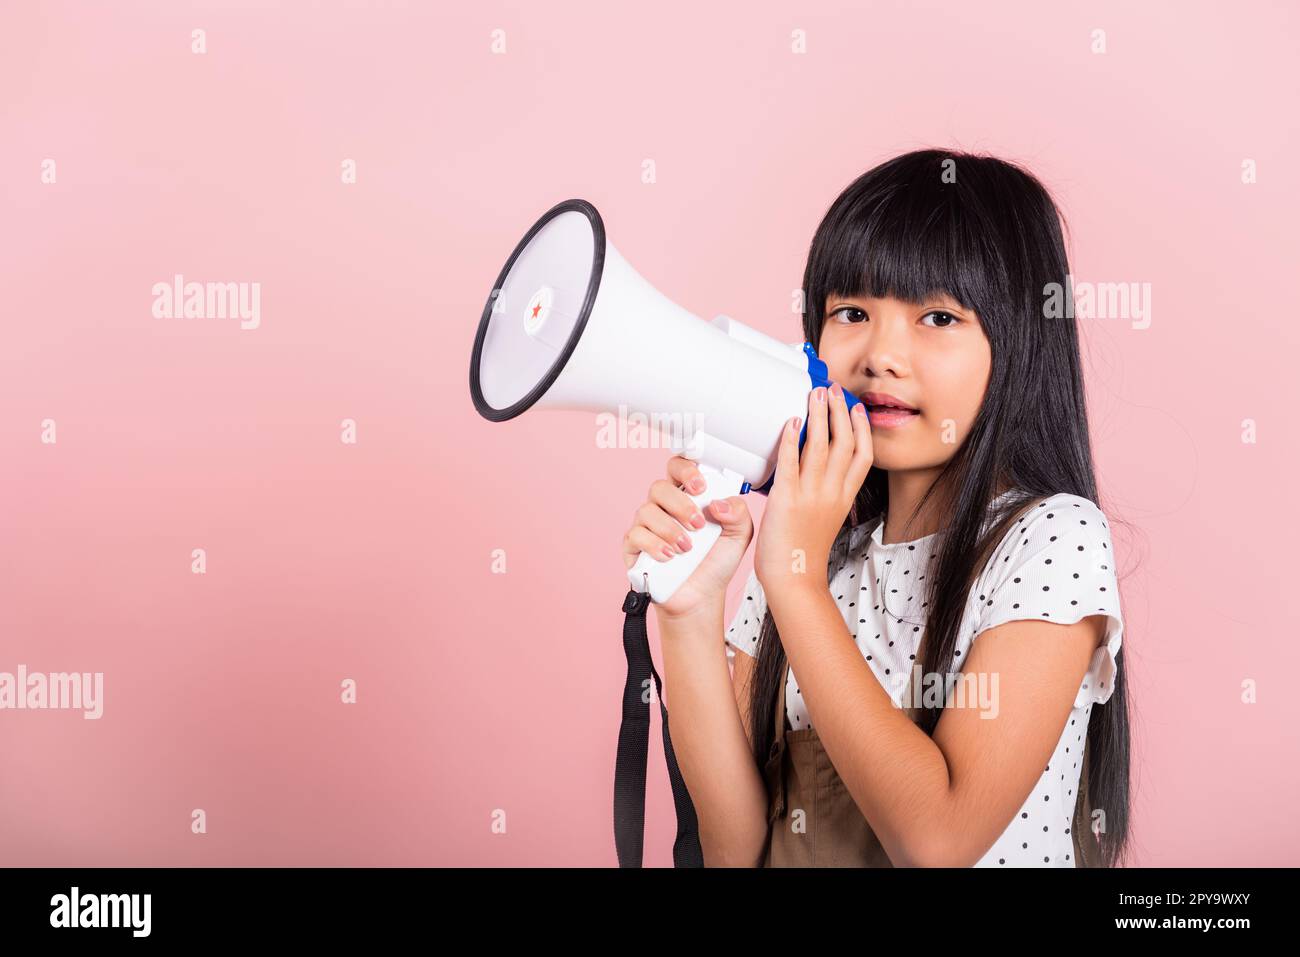 Asiatisches kleines Kind 10 Jahre alt schreiend durch Megaphon Stockfoto